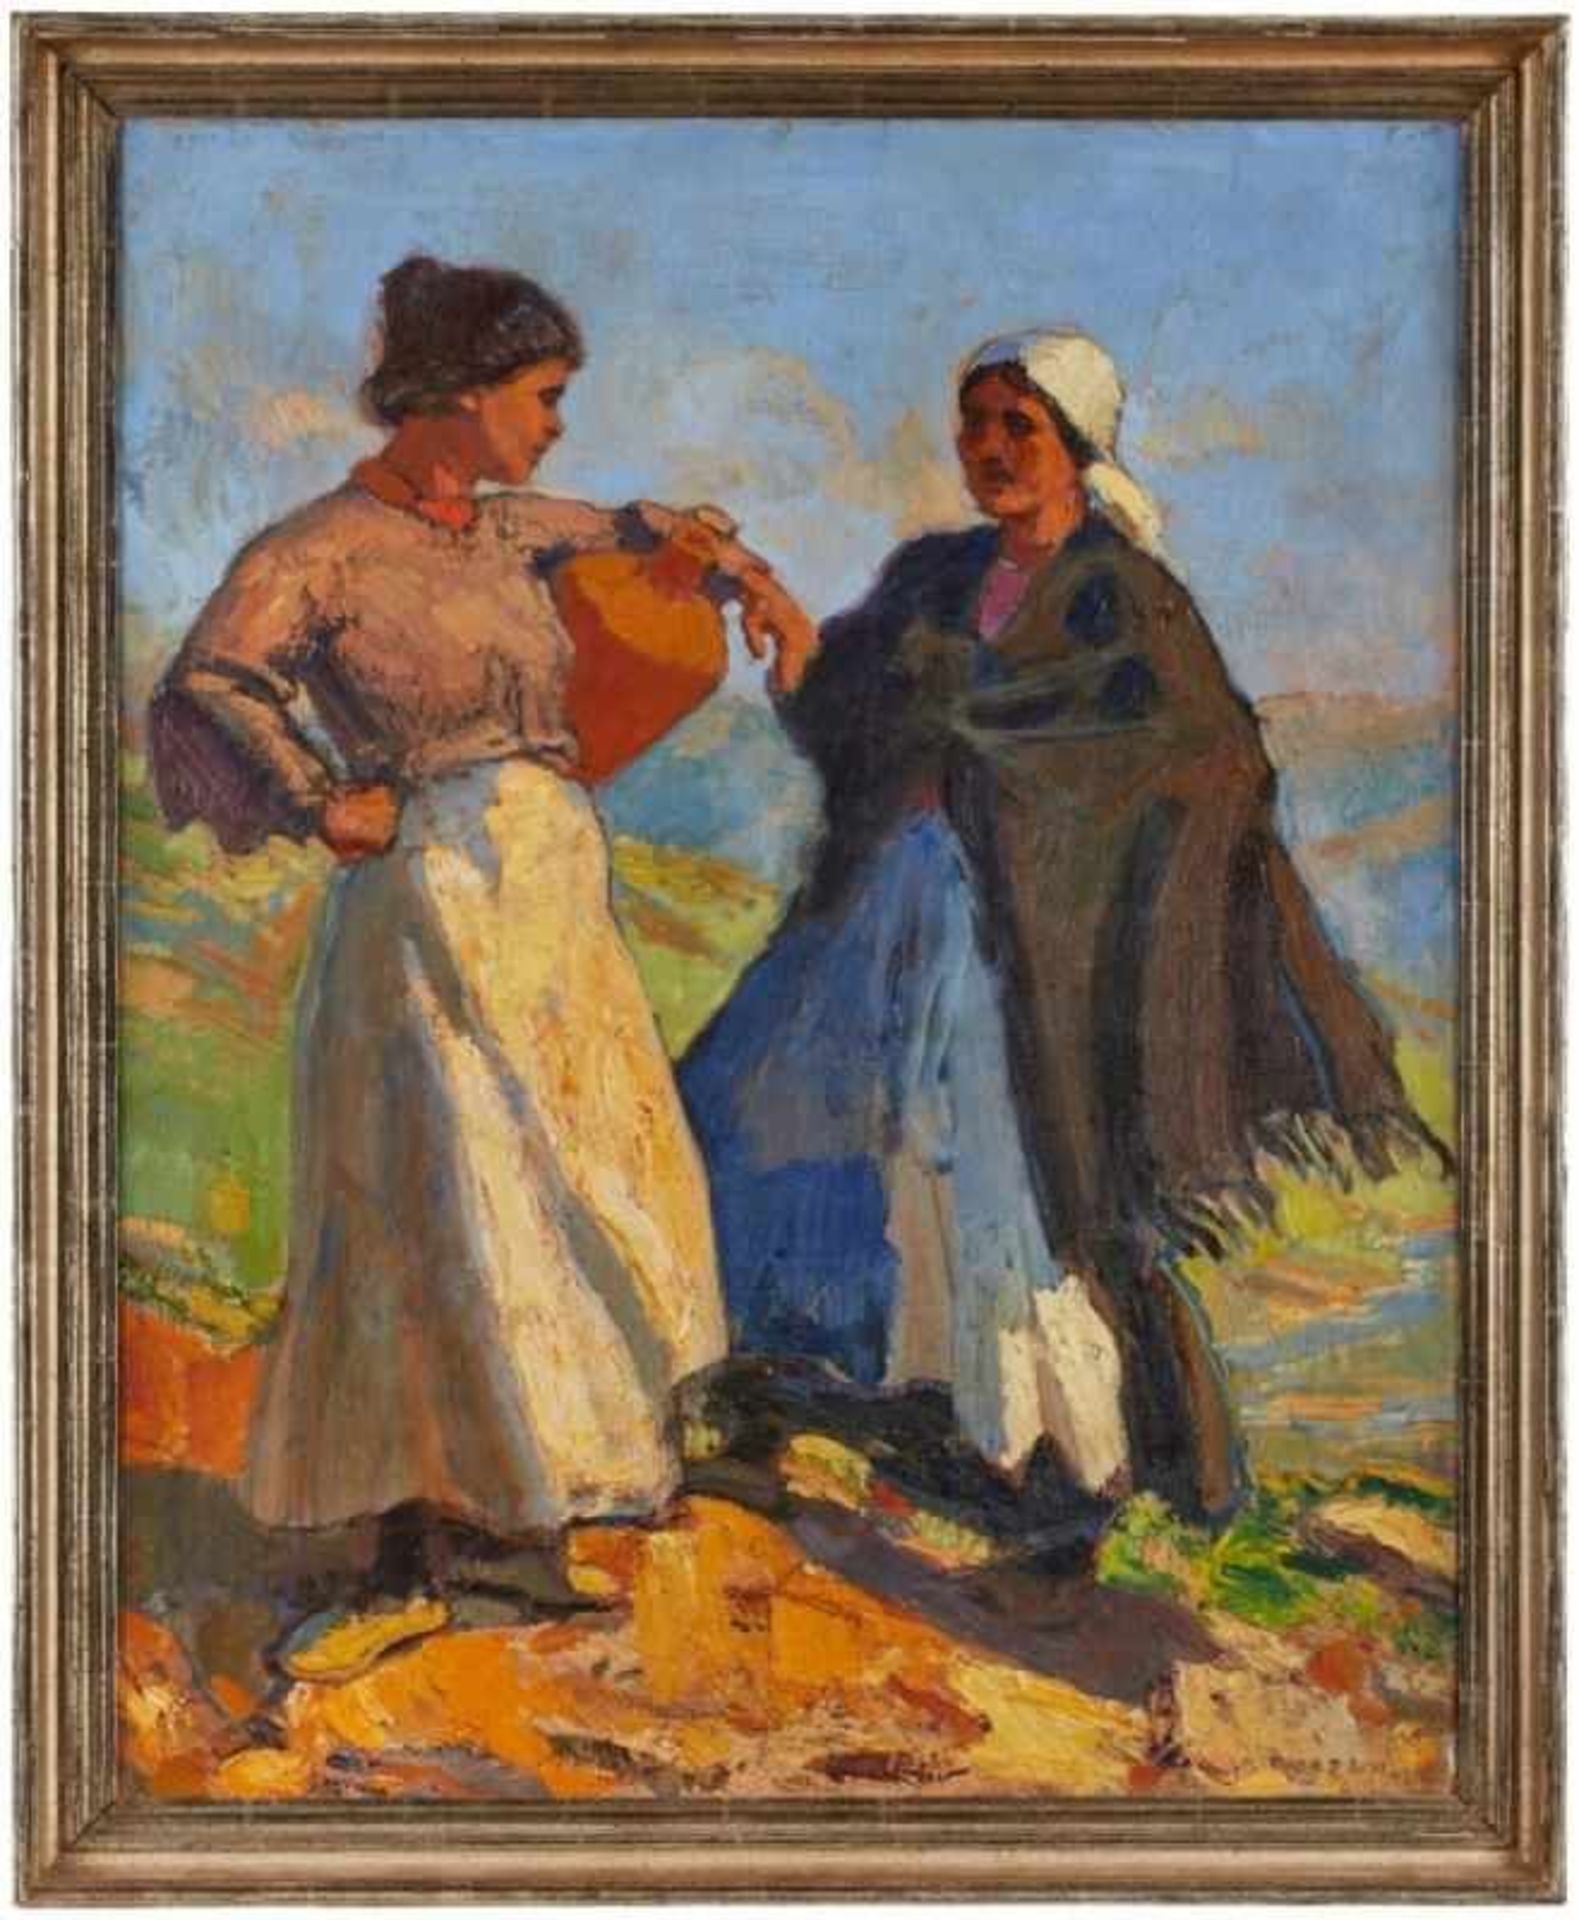 Gemälde Rudolf Gudden 1865 Werneck - 1935 München "Andalusische Mädchen" u. re. sign. Gudden Verso - Bild 2 aus 3